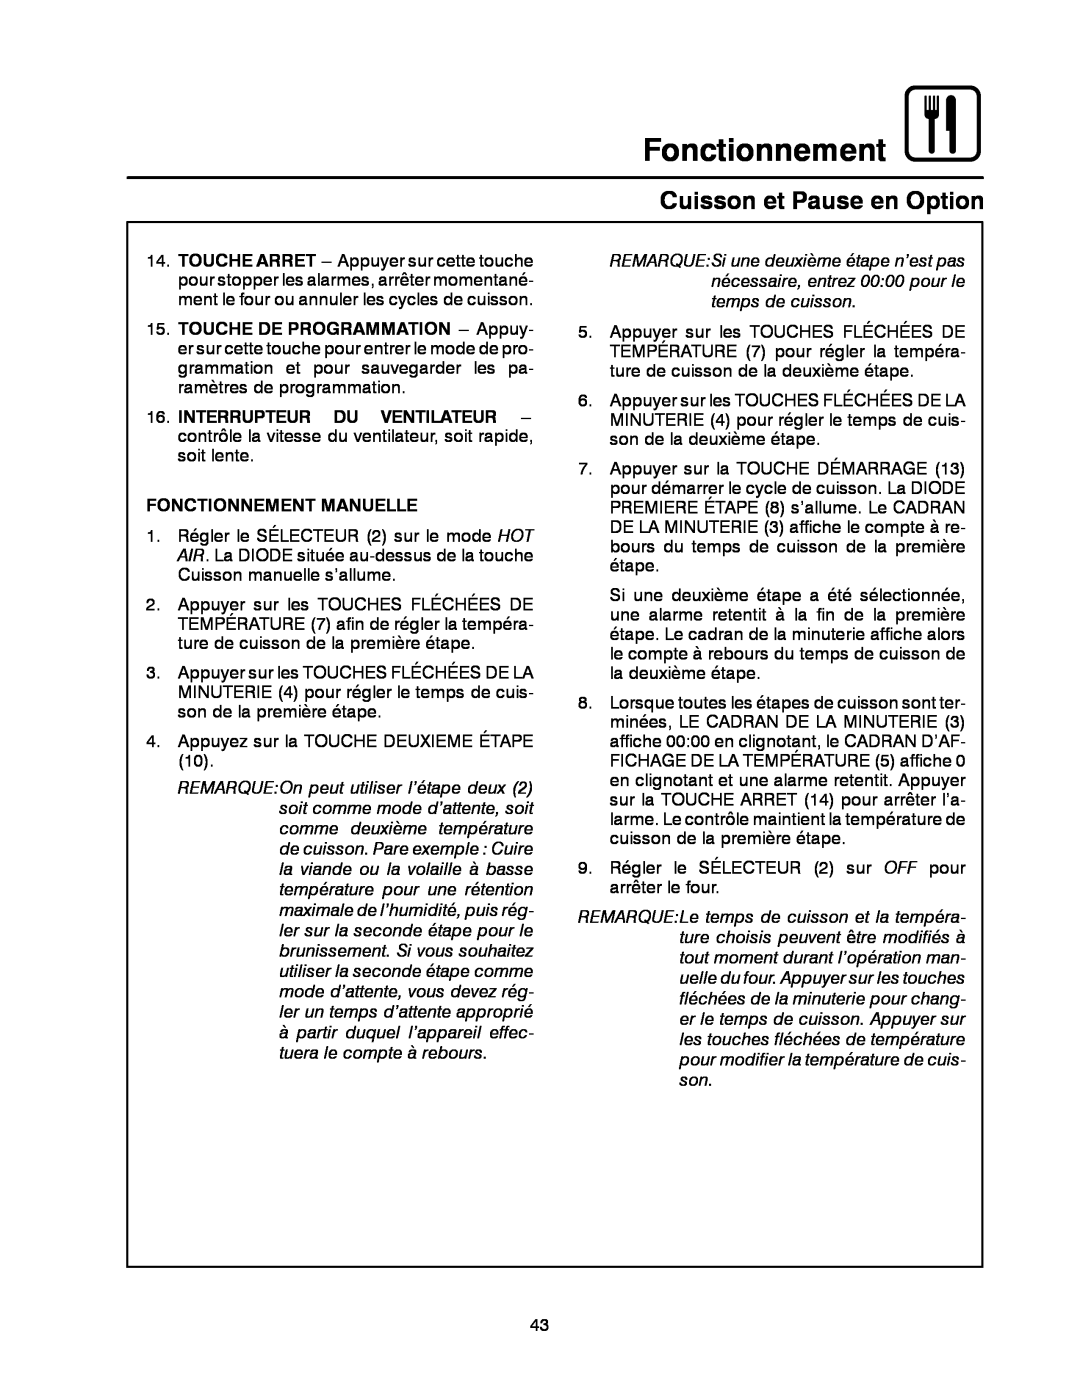 Blodgett CNV14E, CNV14G manual Cuisson et Pause en Option, Interrupteur Du Ventilateur, Fonctionnement Manuelle 